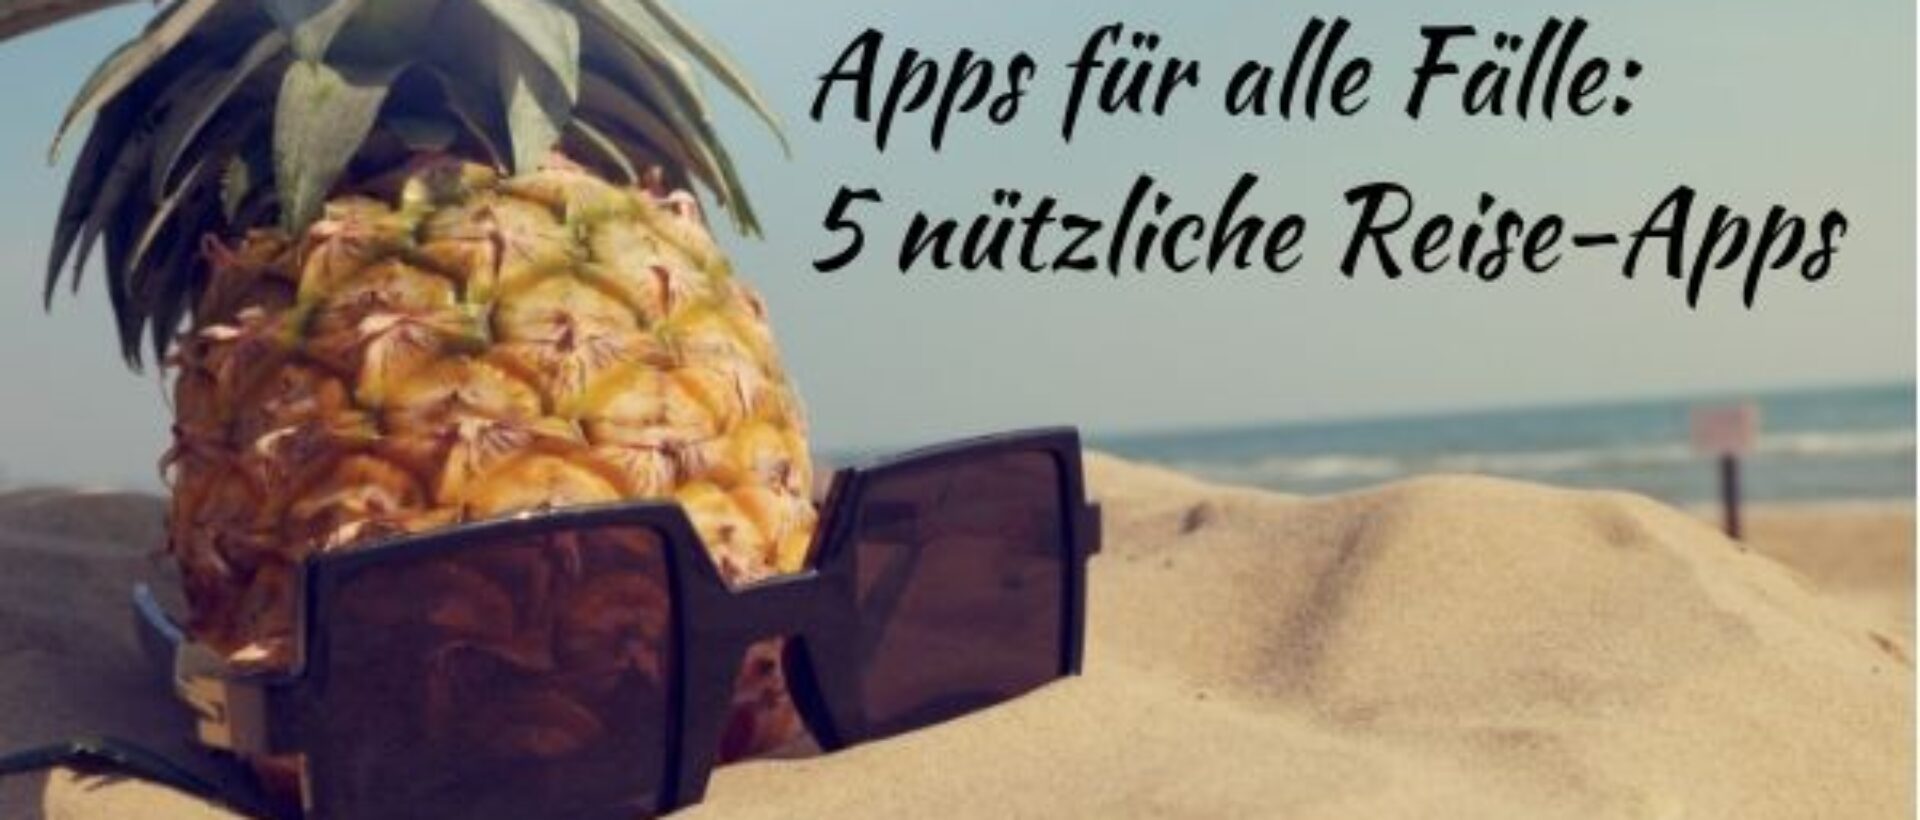 Eine Ananas und eine Sonnenbrille liegen am Strand und oberhalb steht die Überschrift "Apps für alle Fälle: 5 nützliche Reise-Apps".